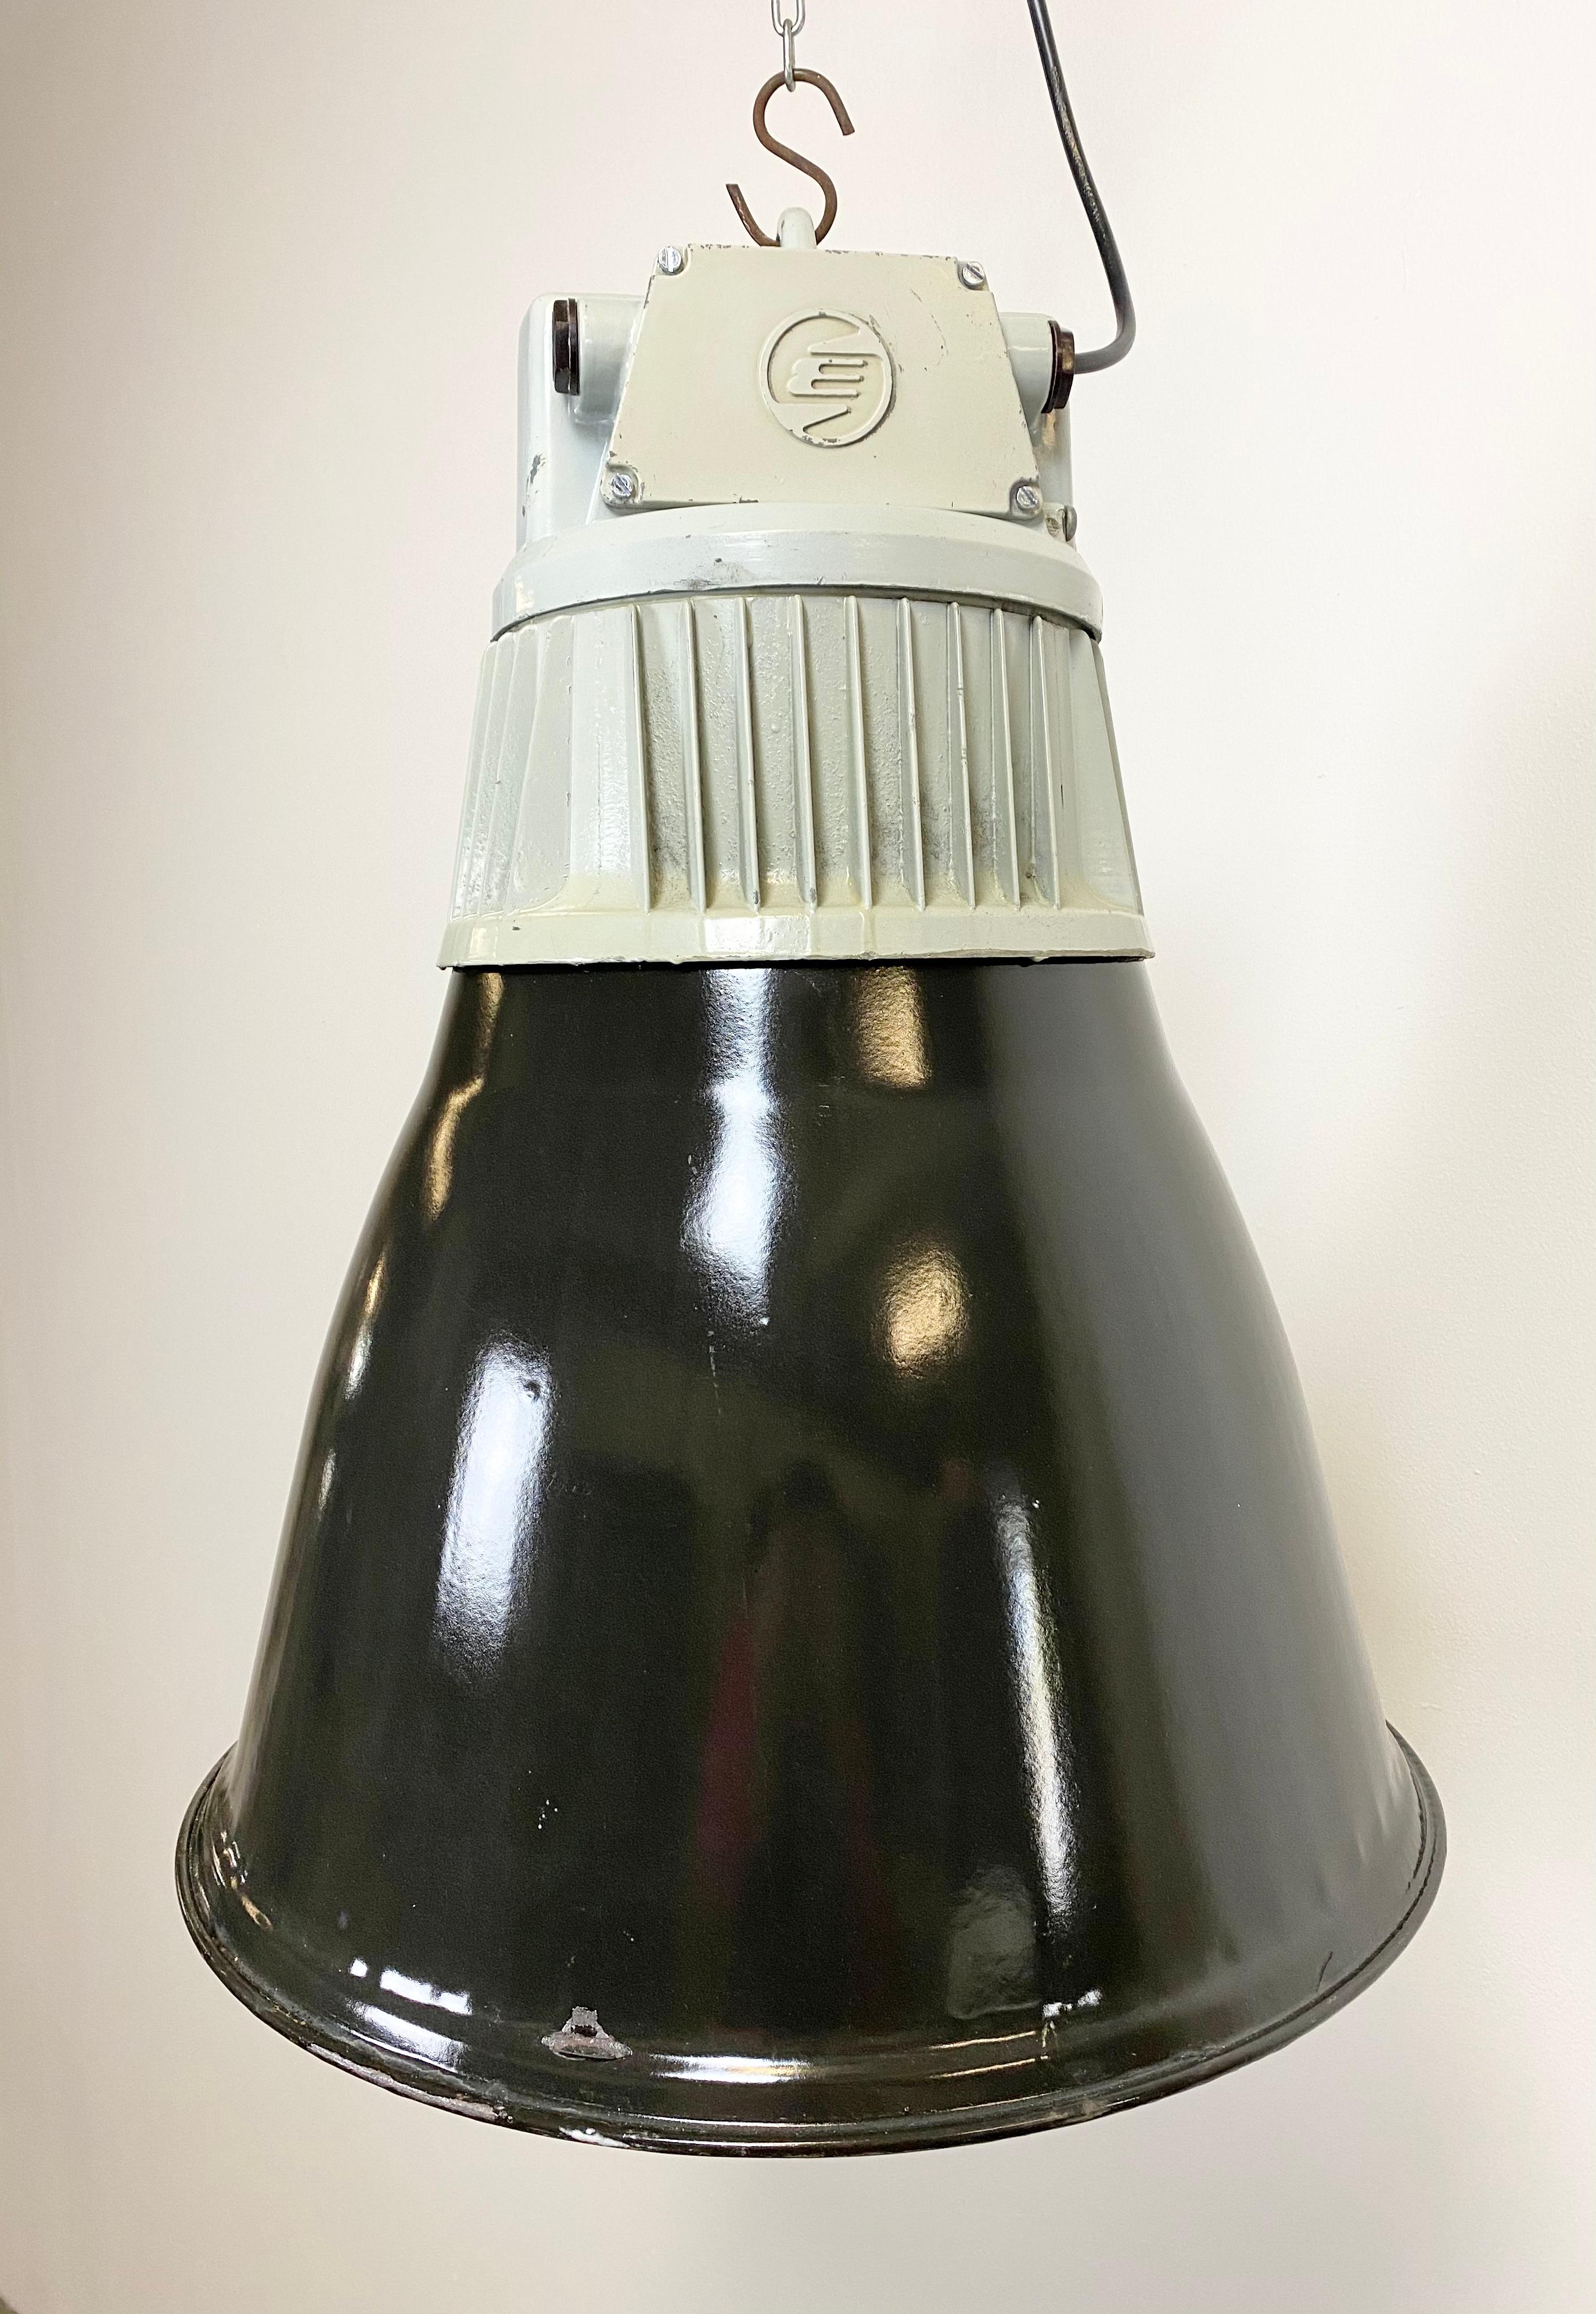 - Industrielle Fabrikhallenleuchte
- Hergestellt von Elektrosvit
- Produziert in der ehemaligen Tschechoslowakei in den 1970er Jahren
- Schwarzer Emaille-Schirm mit weißer Innenseite
- Graue Aluminiumgussplatte
- Gewicht: 6 kg
- Neue